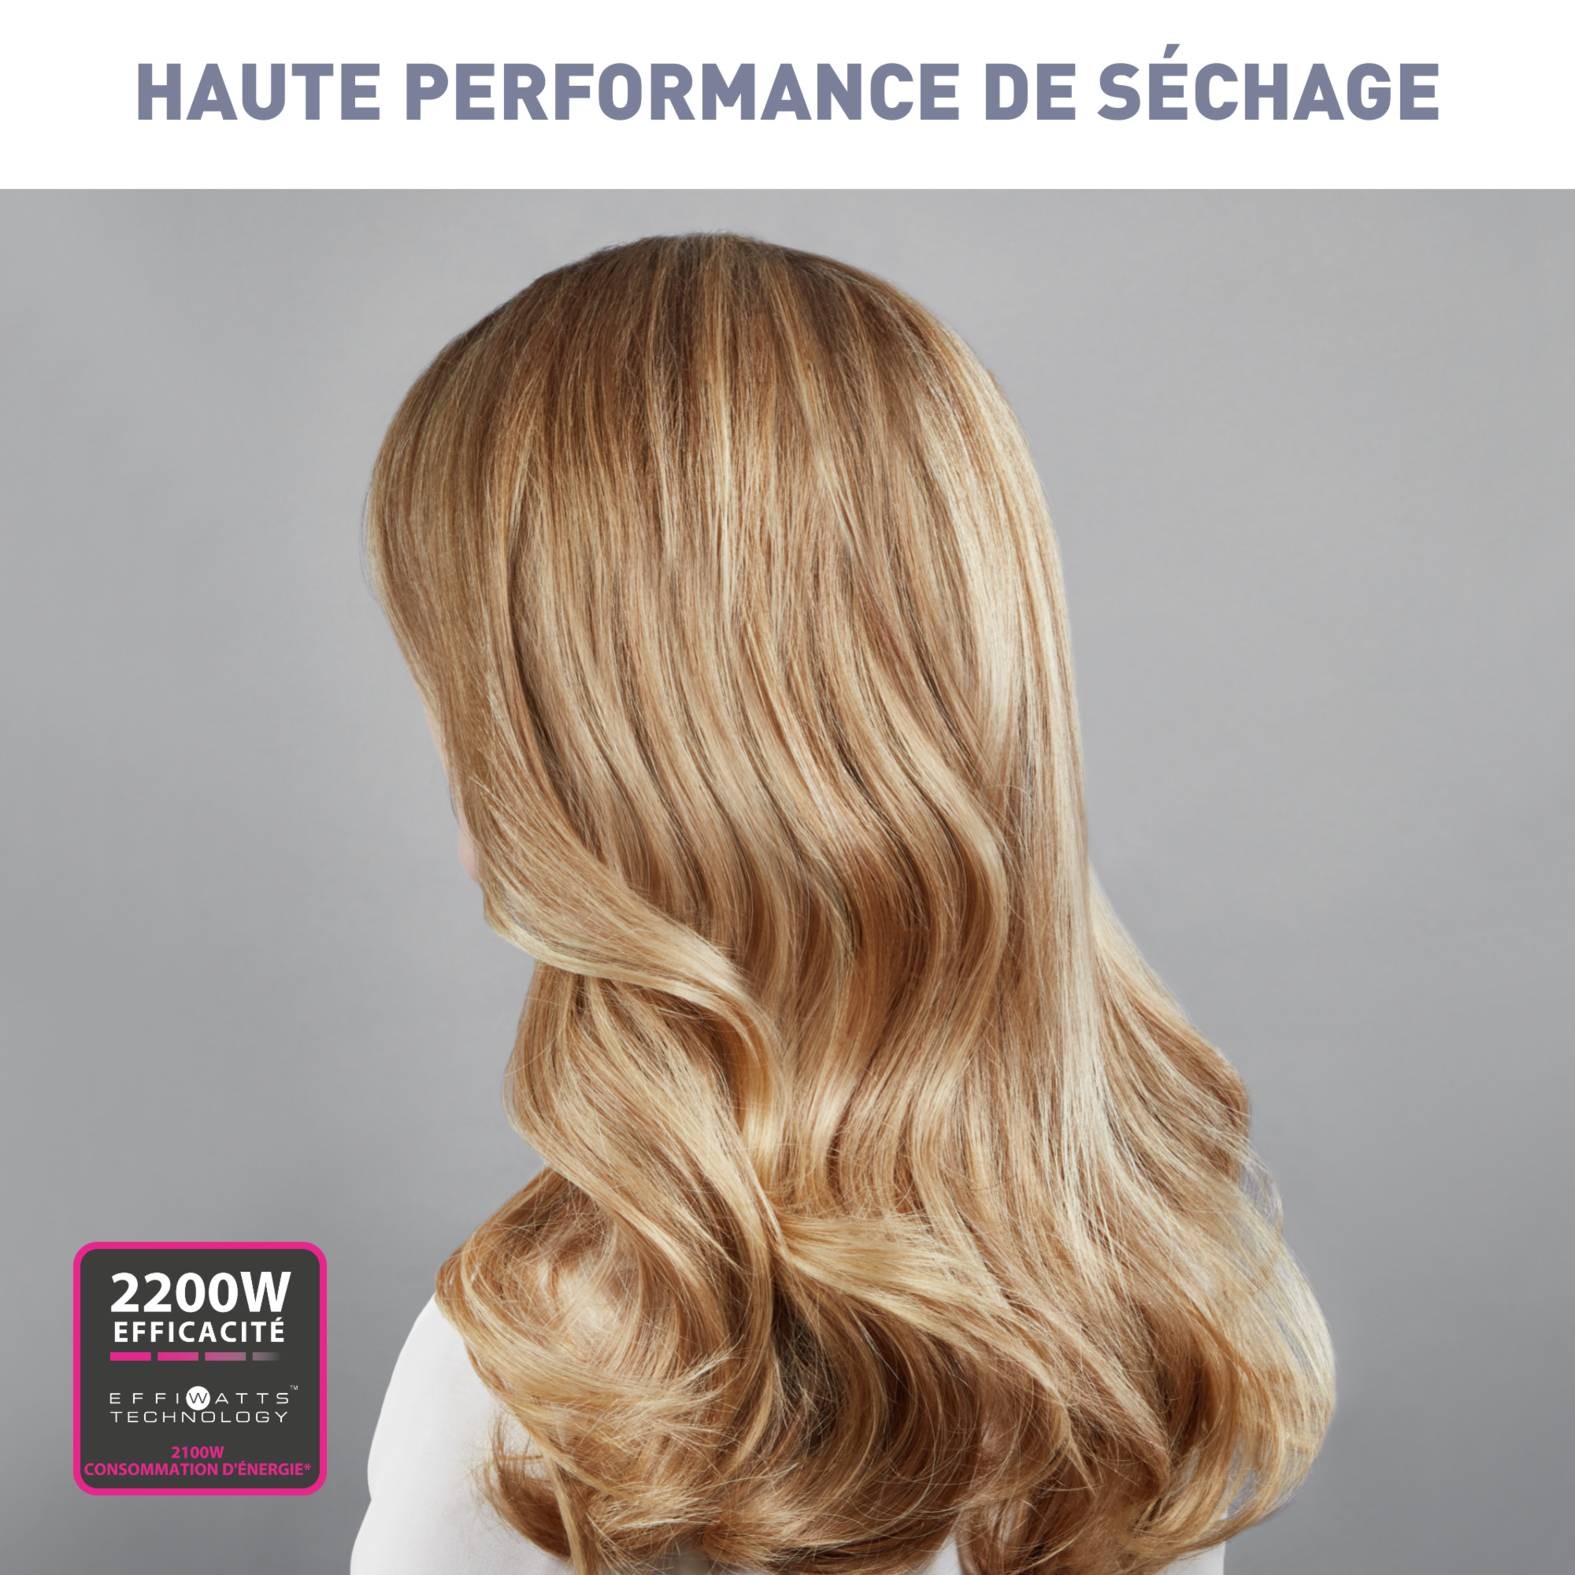 CALOR Sèche-cheveux Studio Dry - CV5803C0